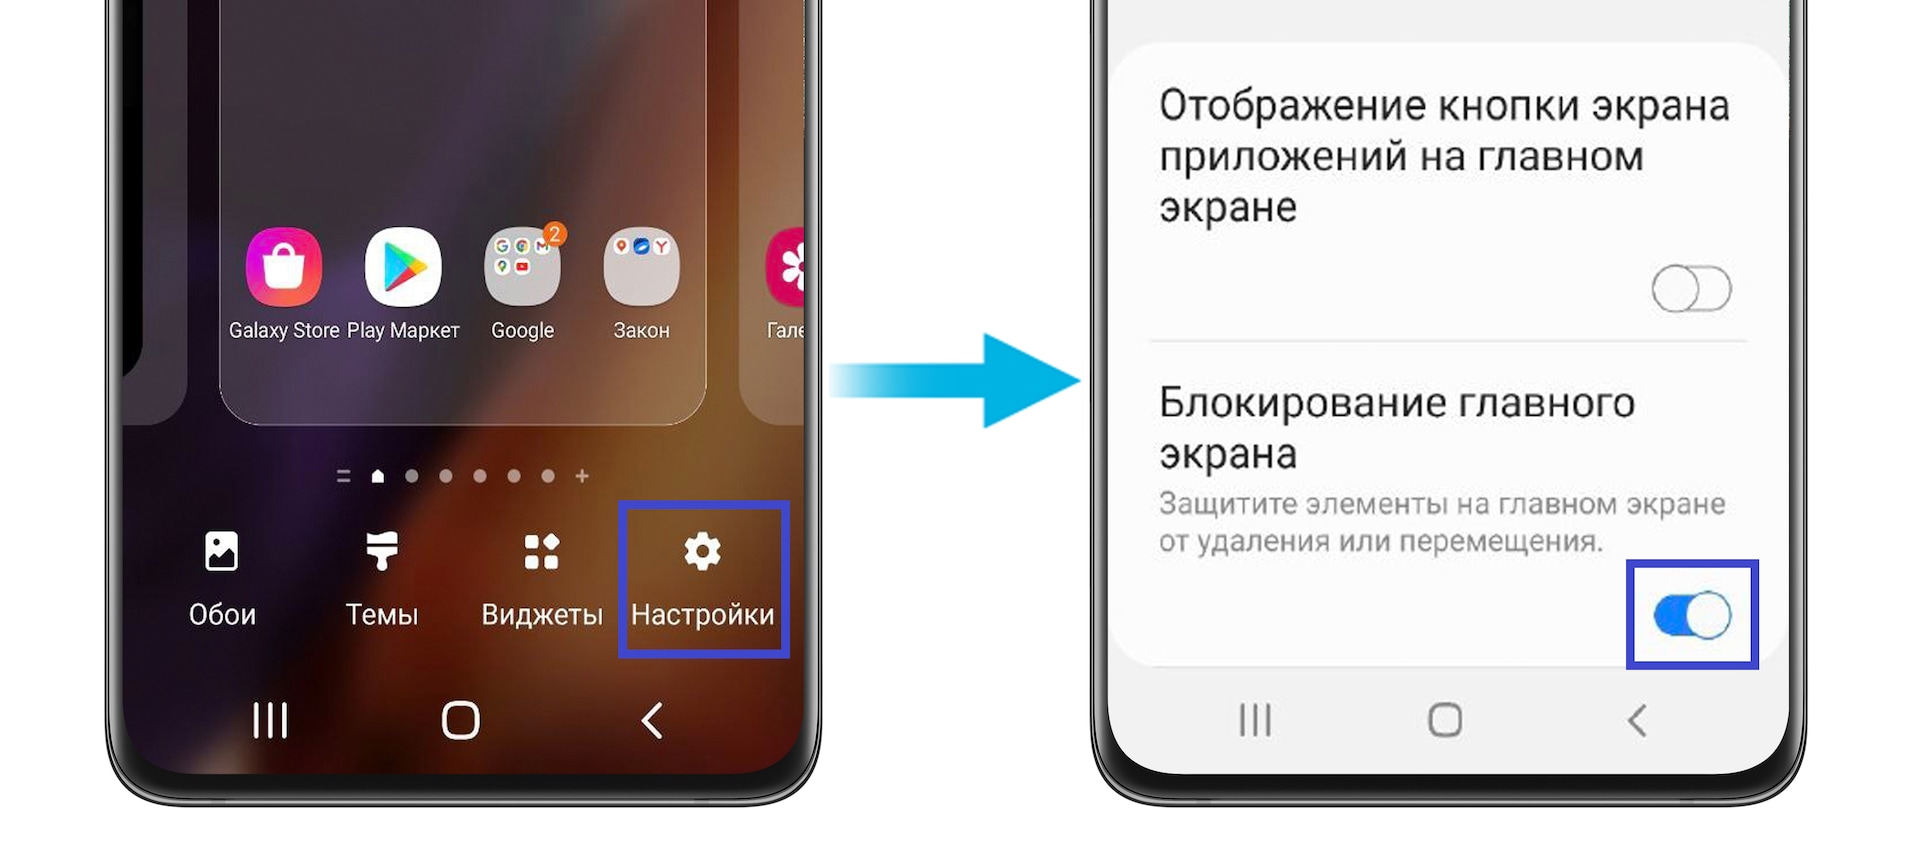 Как добавить приложение на главный экран Samsung Galaxy